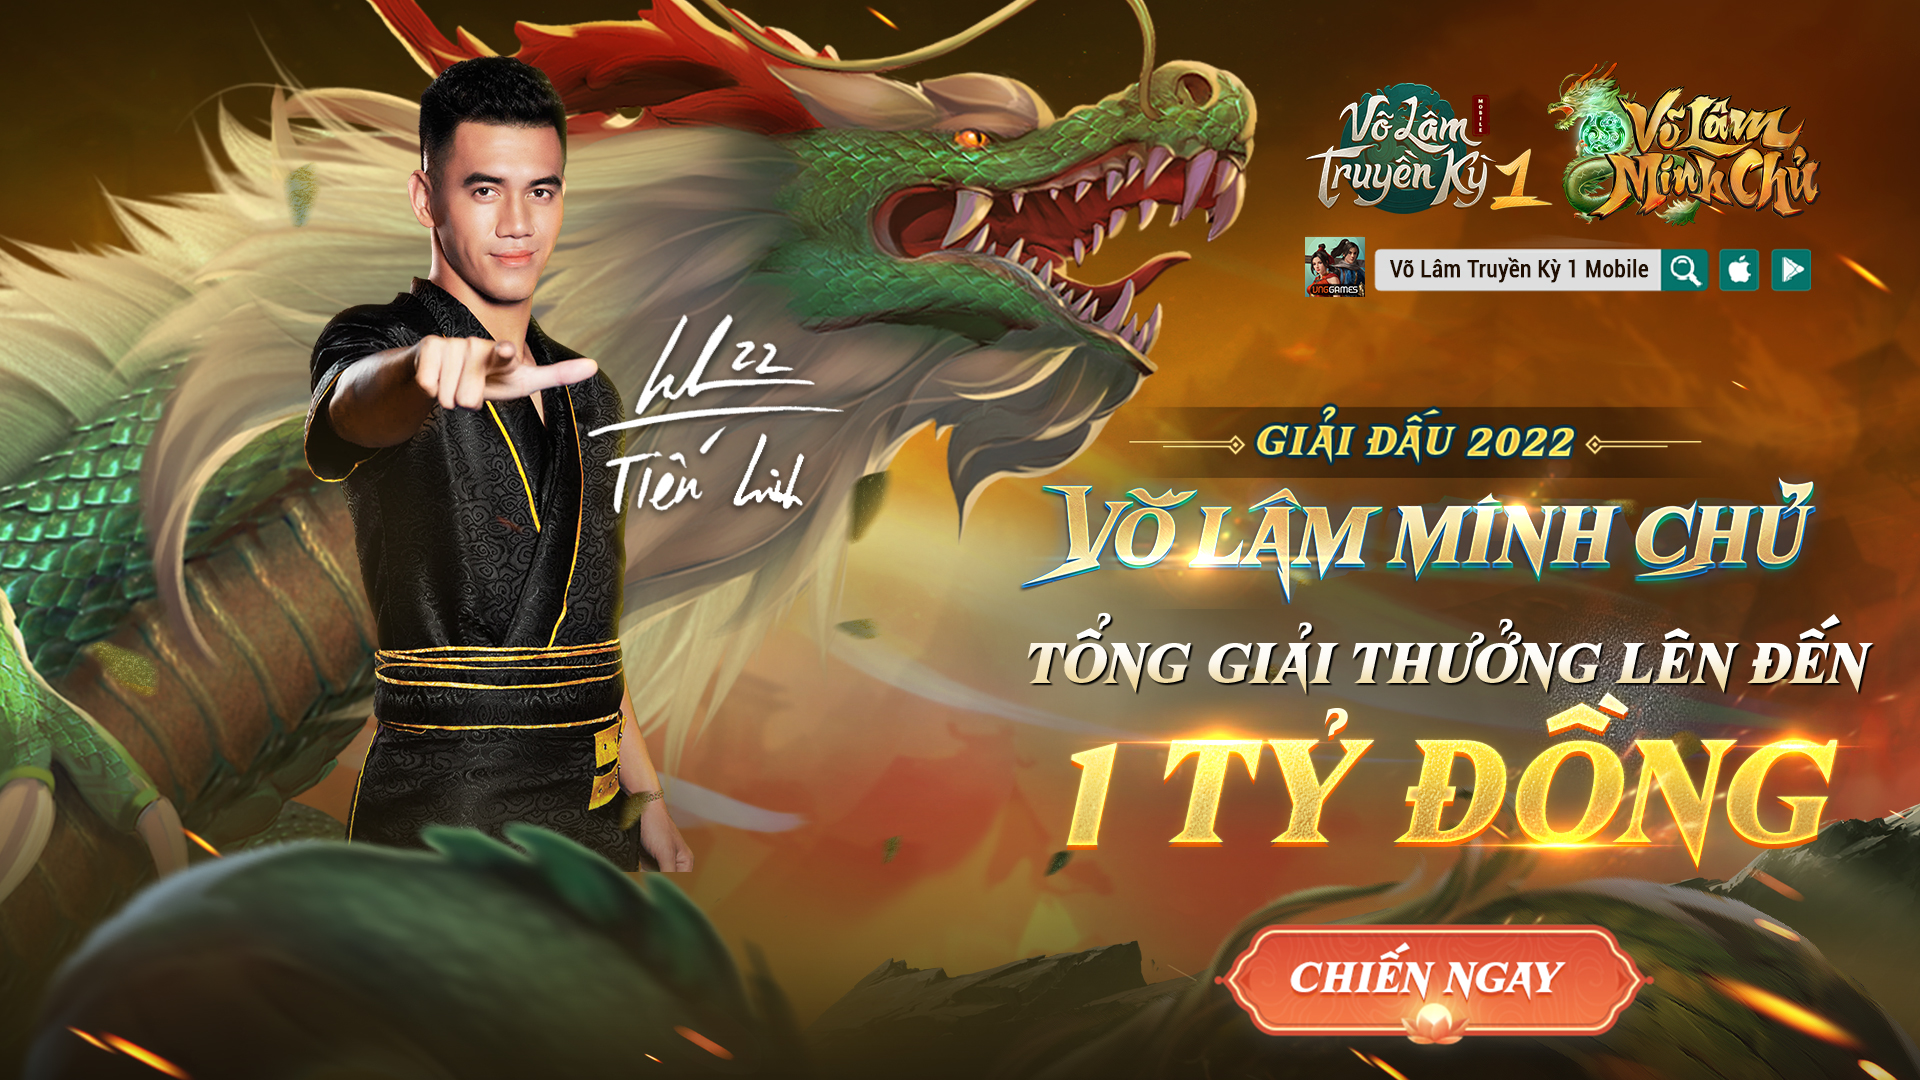 VLTK1M: Công bố Top 28 game thủ bước vào Vòng Chung Kết Võ Lâm Minh Chủ mùa 2